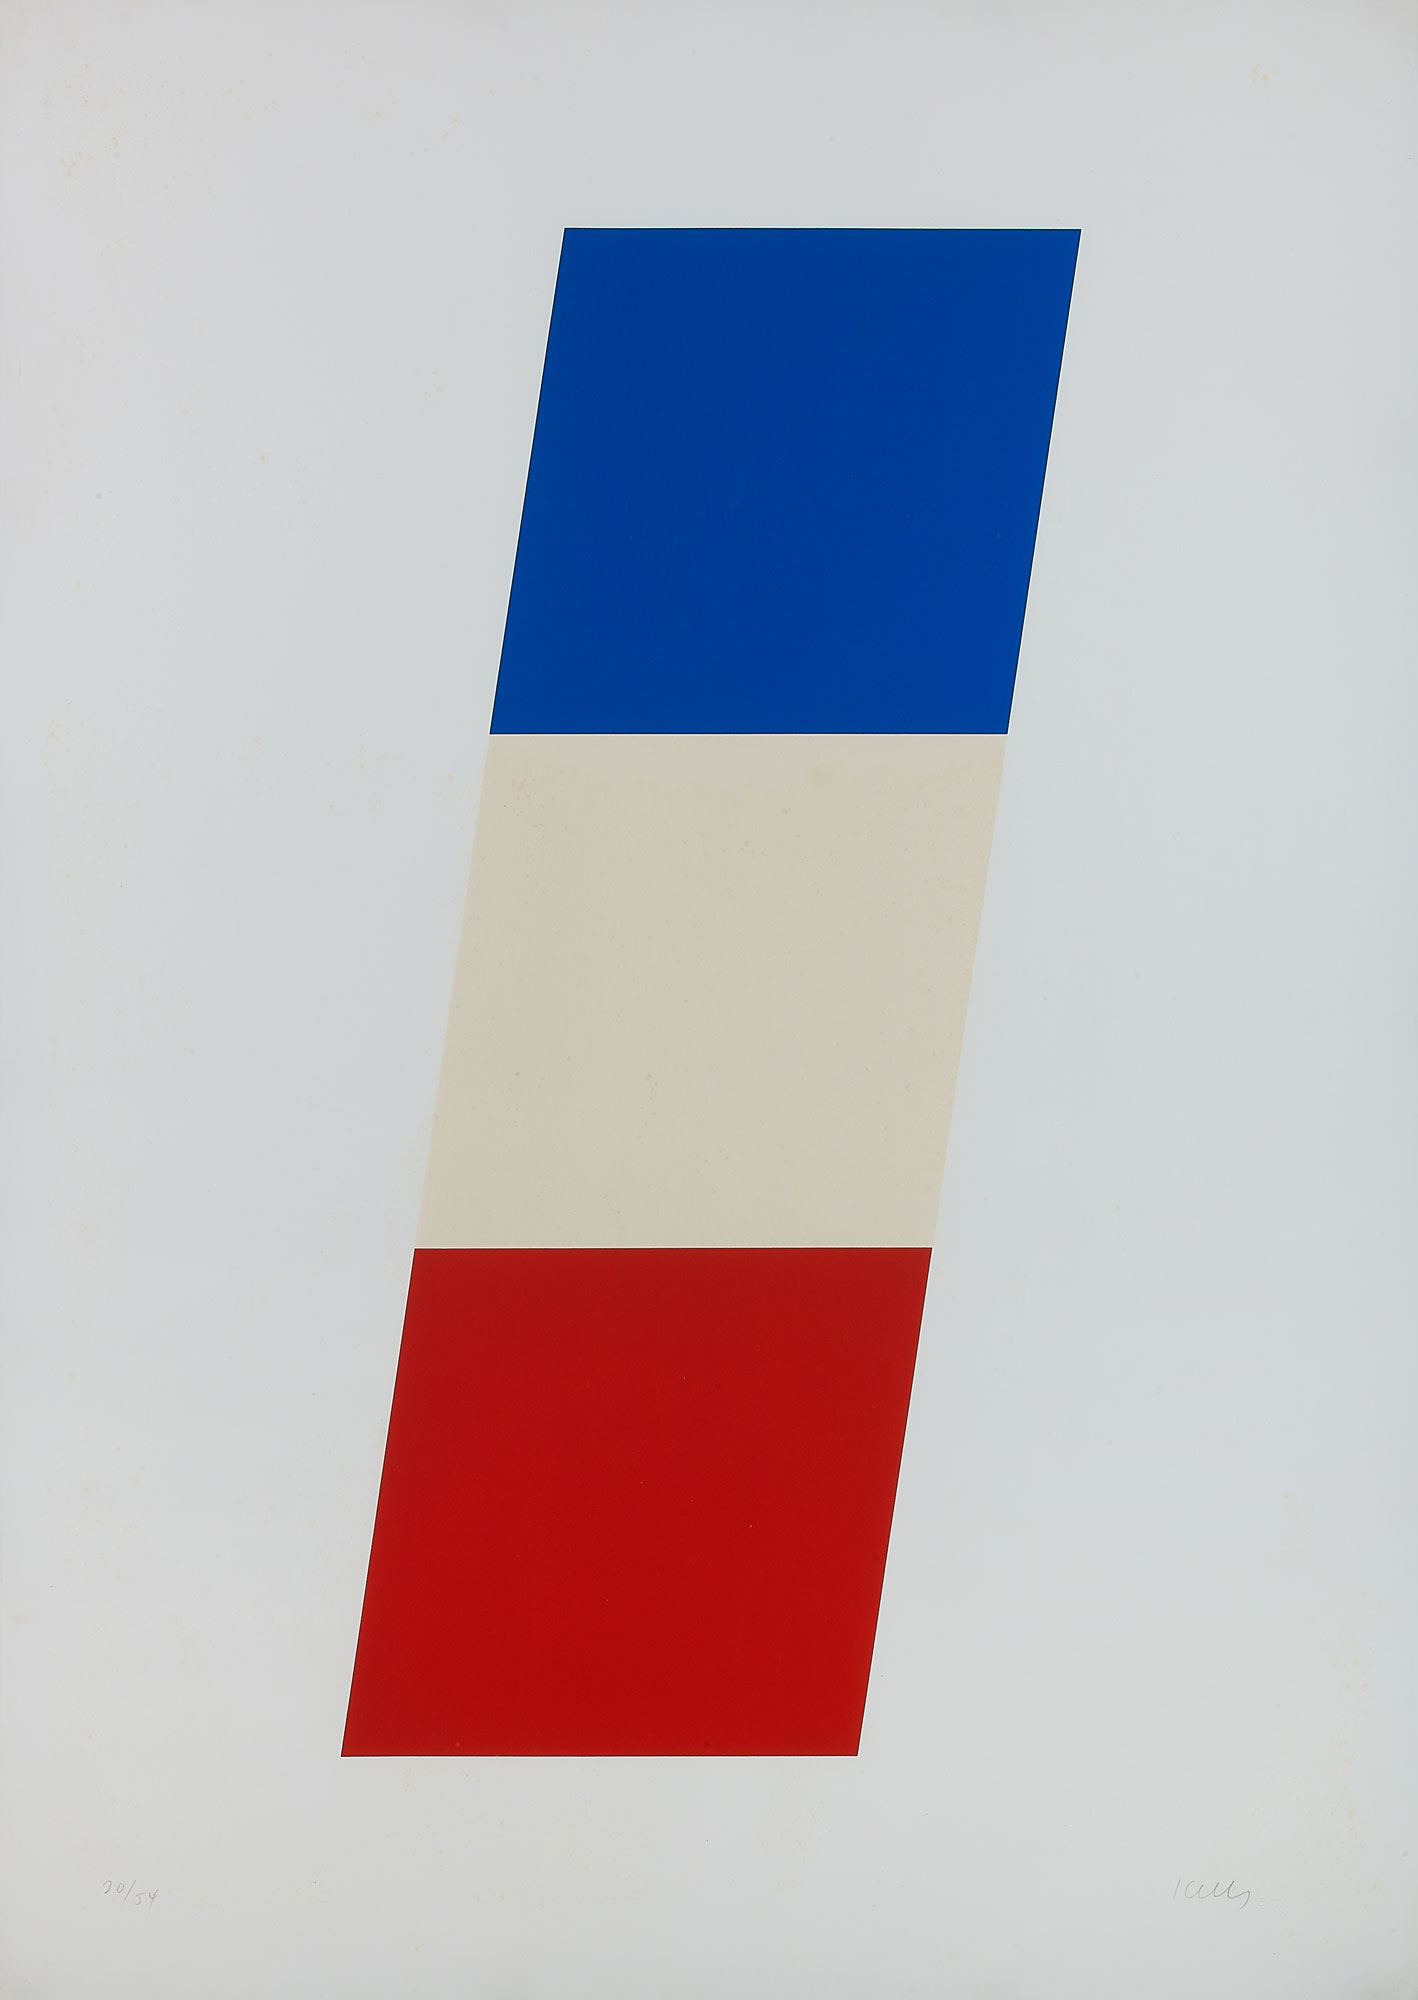 エルスワース・ケリー(Ellsworth Kelly) ブルー/ホワイト/レッド(Blue / White / Red) <br>1970年 108×76cm リトグラフ ed.54